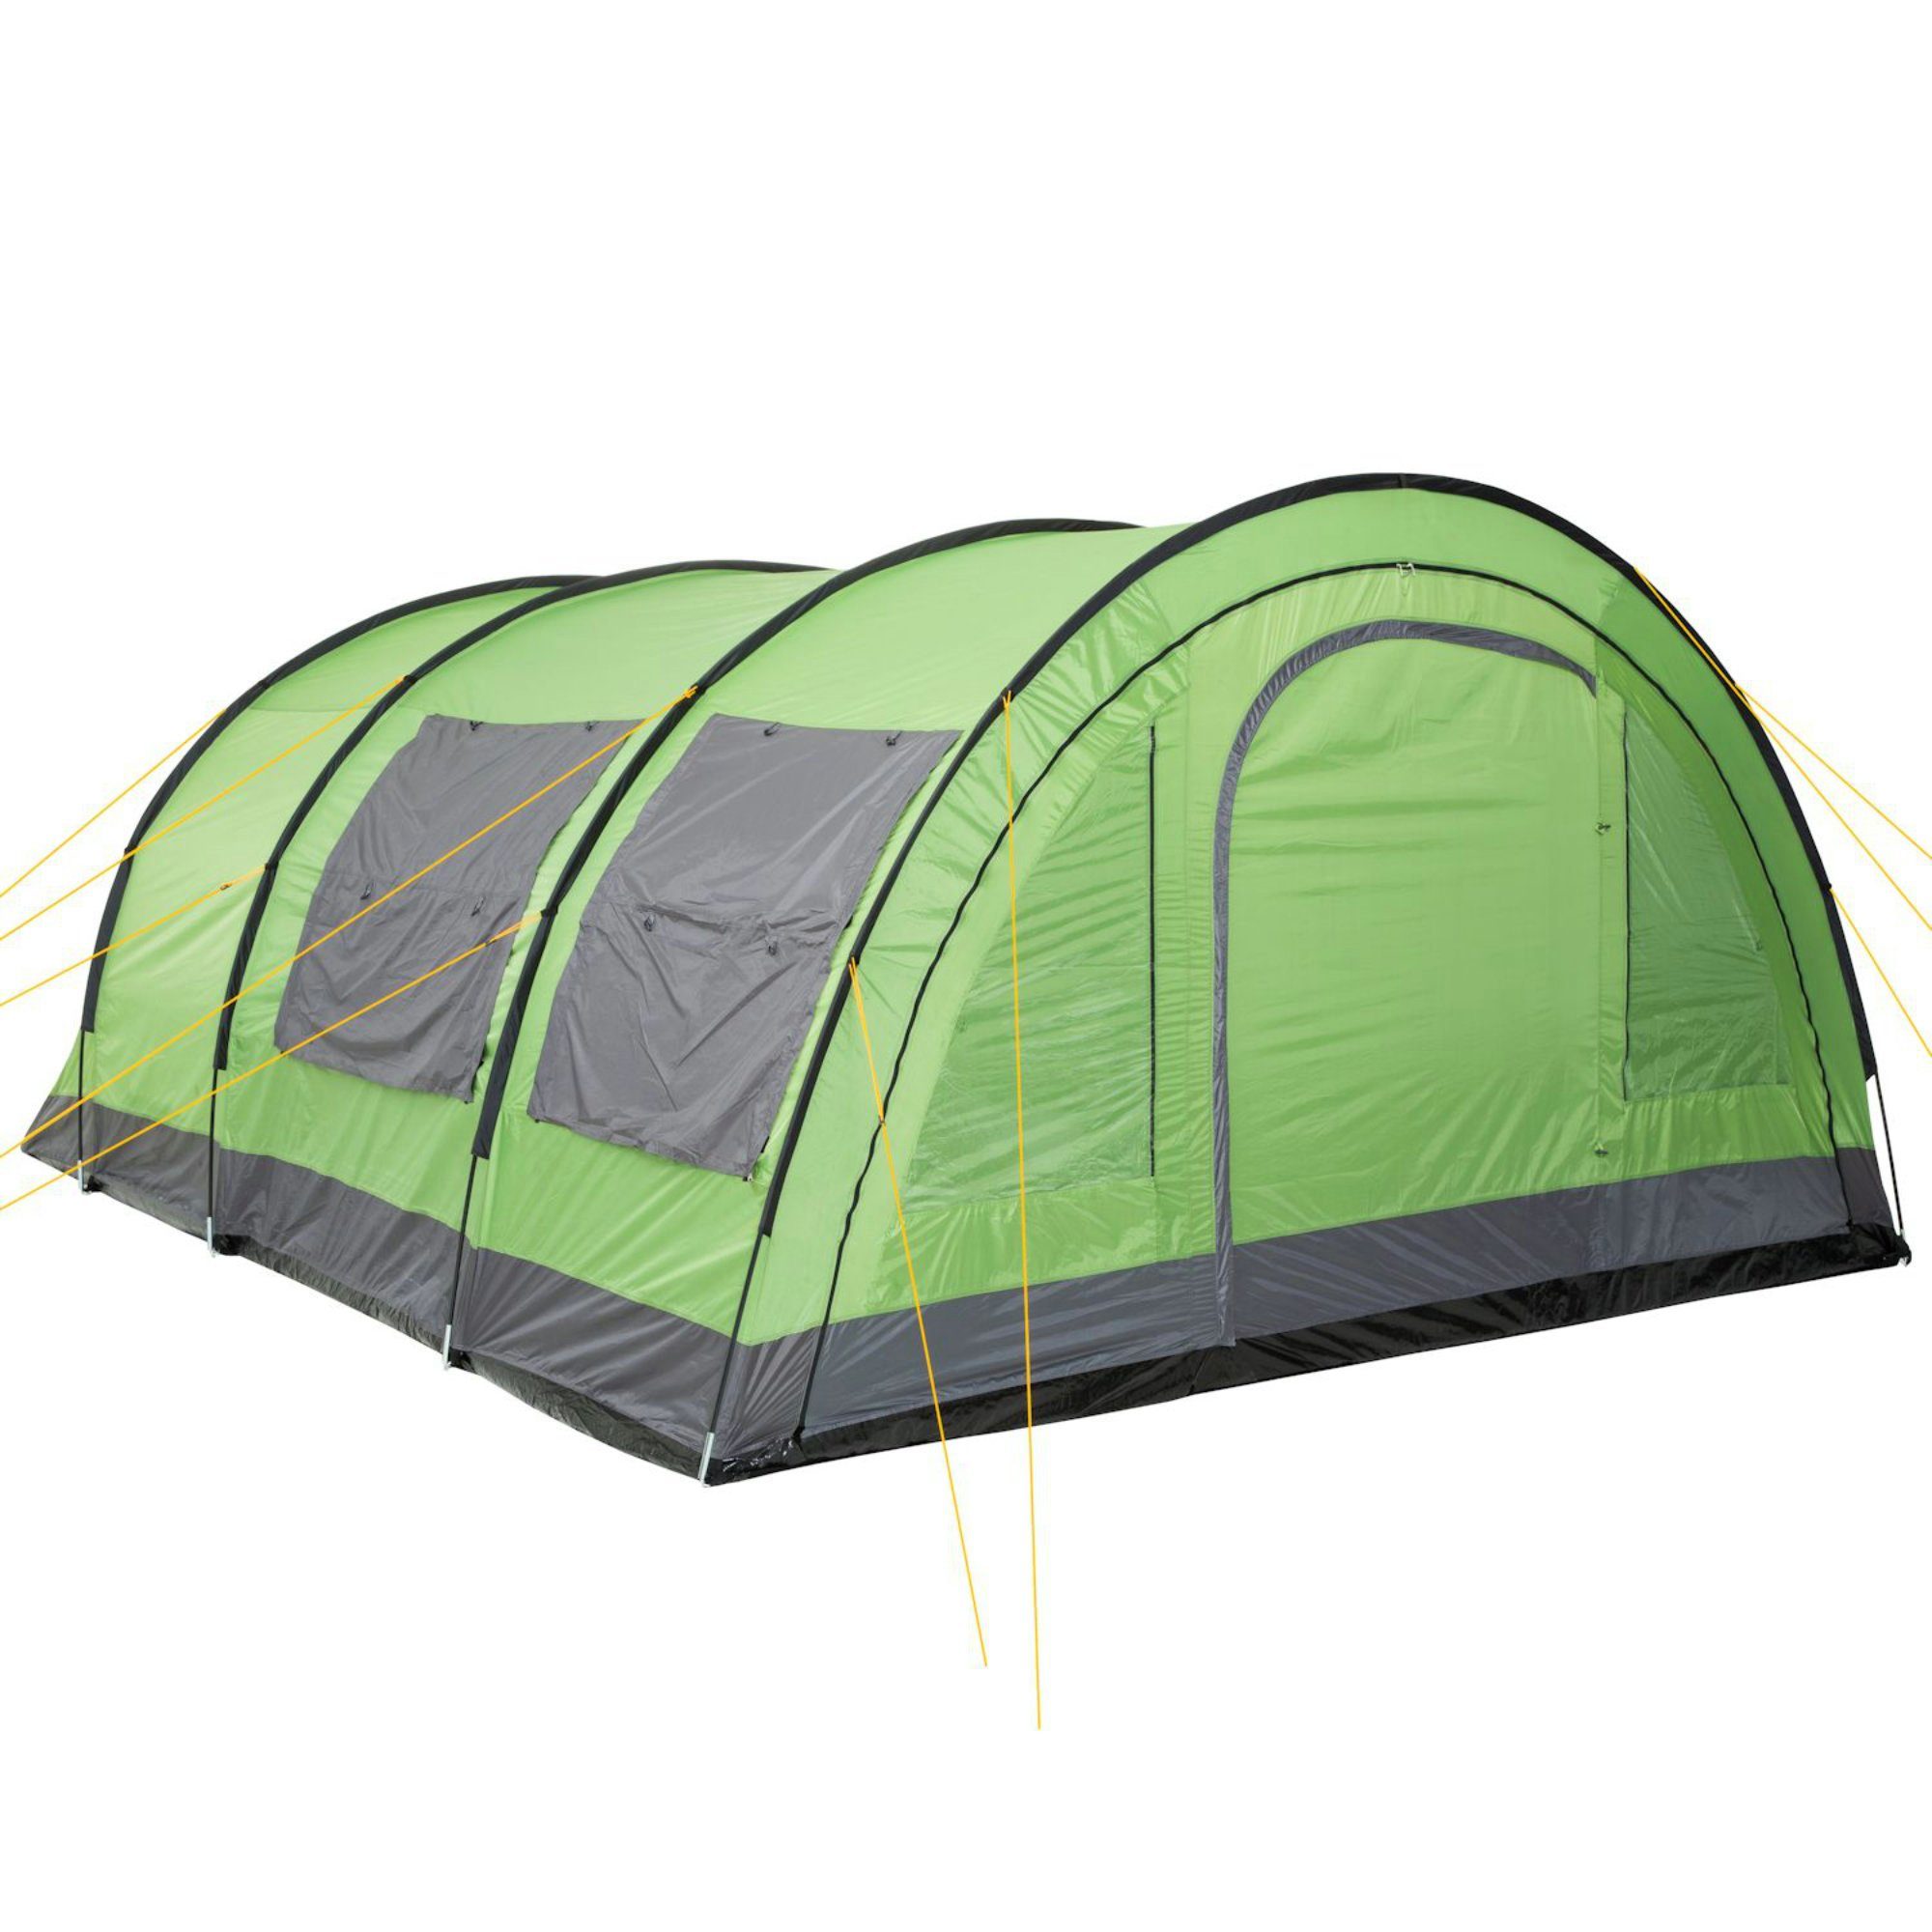 CampFeuer Tunnelzelt Zelt Relax6 für 6 Personen, Grün/Grau, 5000 mm Wassersäule, Personen: 6